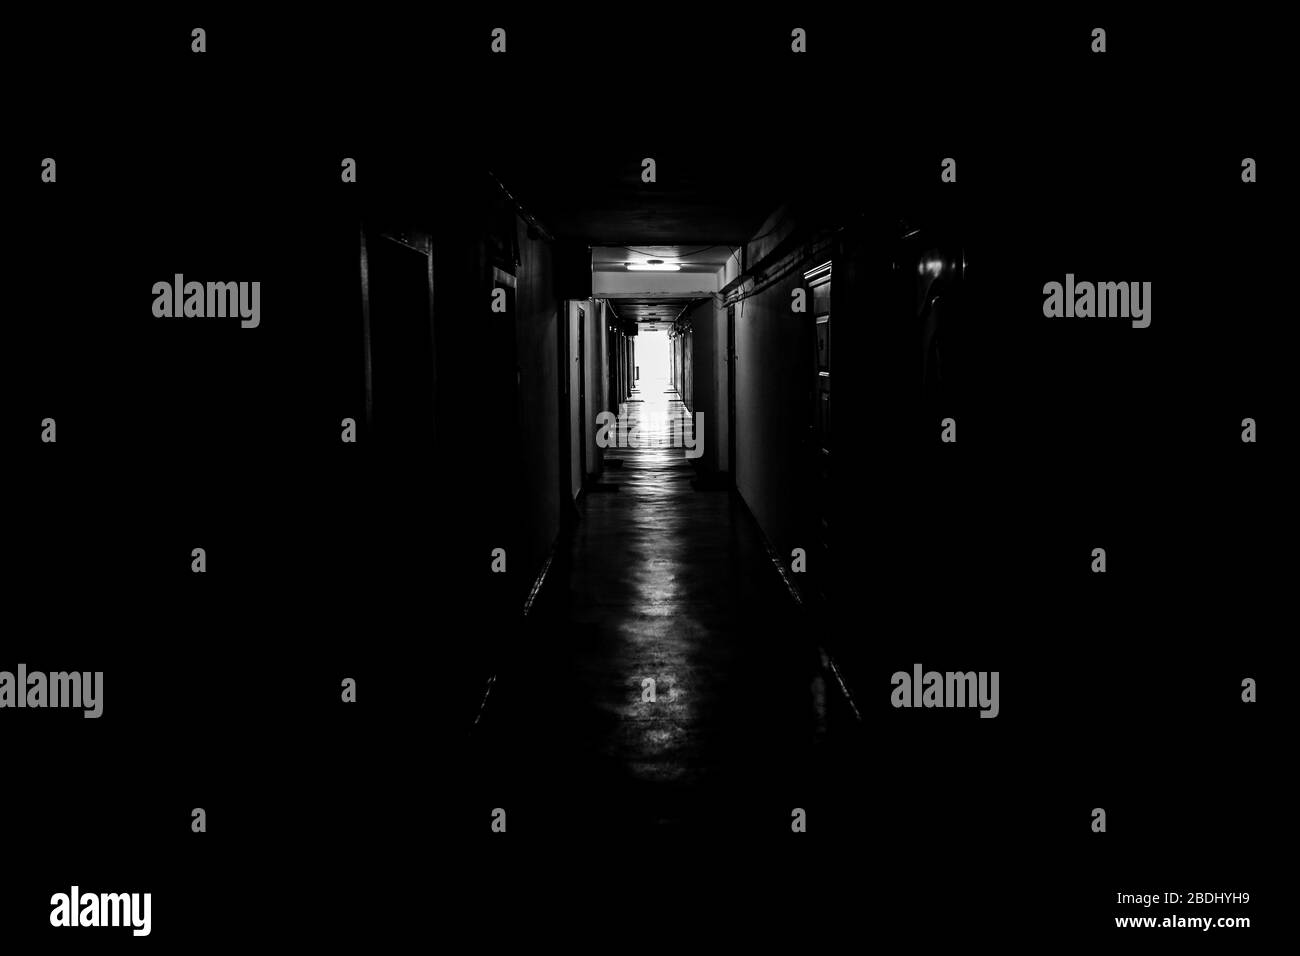 Schwarz-Weiß-Bild mit dunkel-stimmungsvollem Flur mit Wohnungstüren auf jeder Seite - das Licht am Ende des Tunnels. Stockfoto